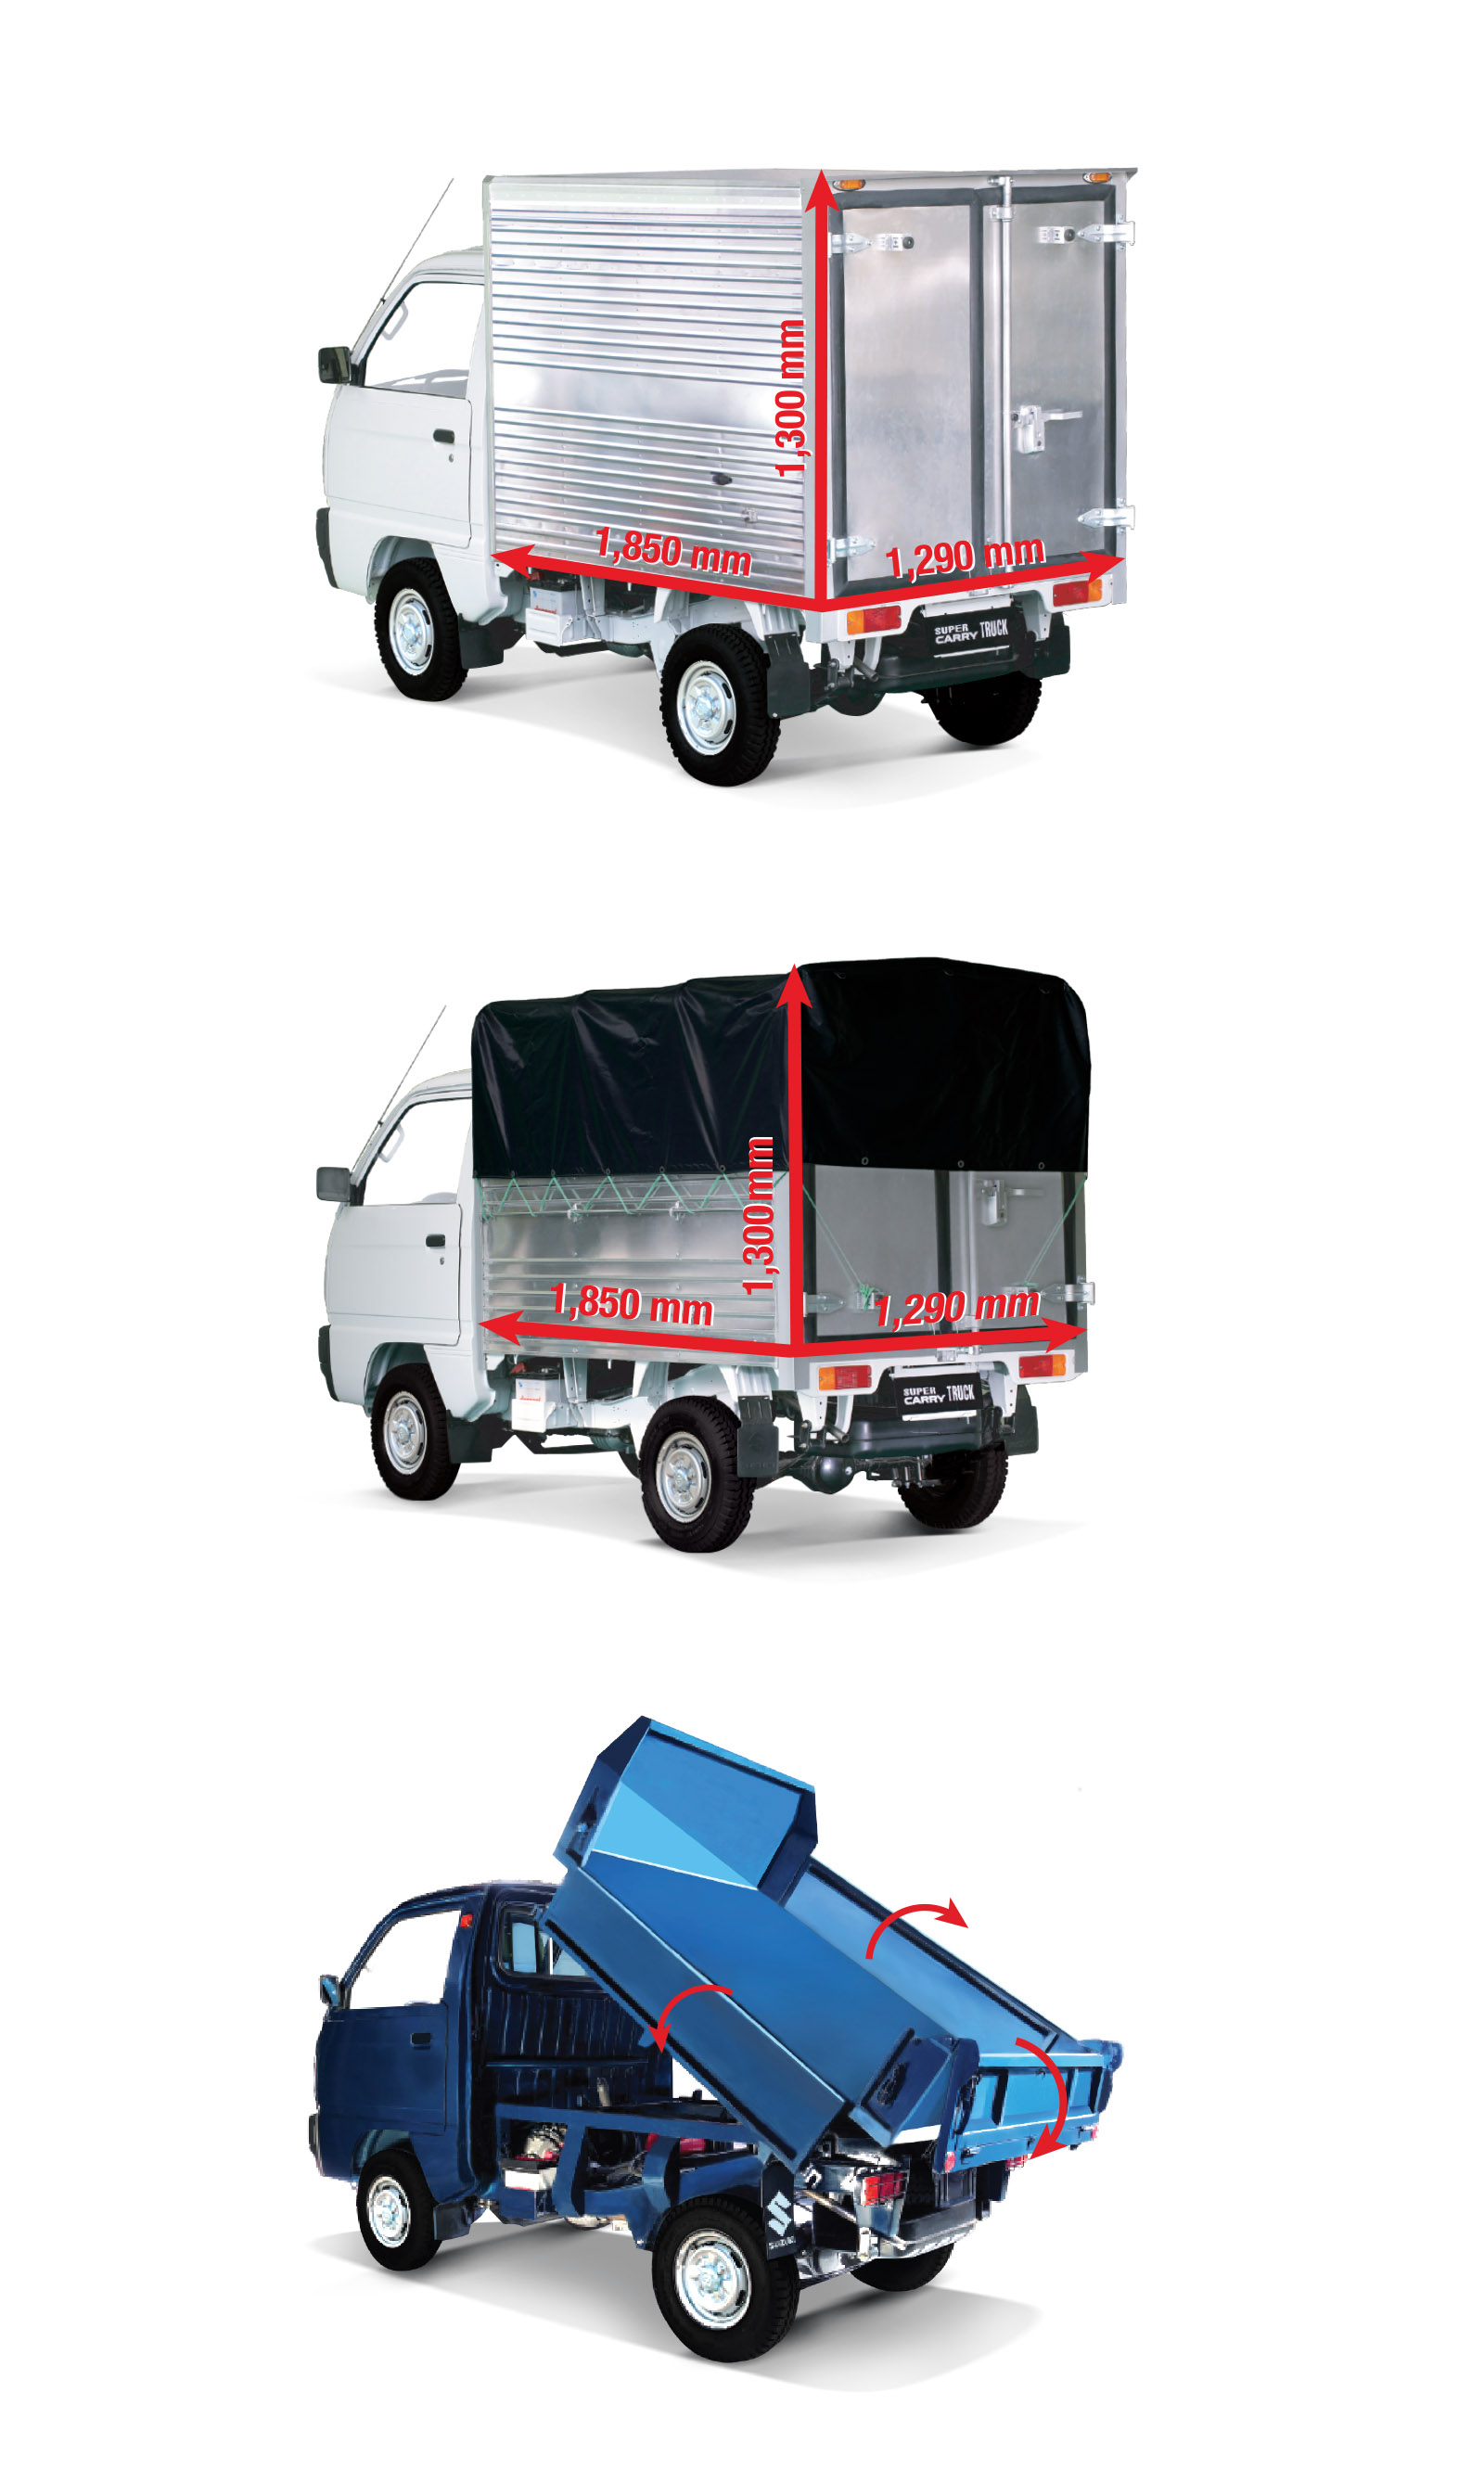 Khách hàng Suzuki Carry Truck có nhiều lựa chọn thùng xe: thùng kín, mui bạt, thùng ben (theo thứ tự từ trên xuống)